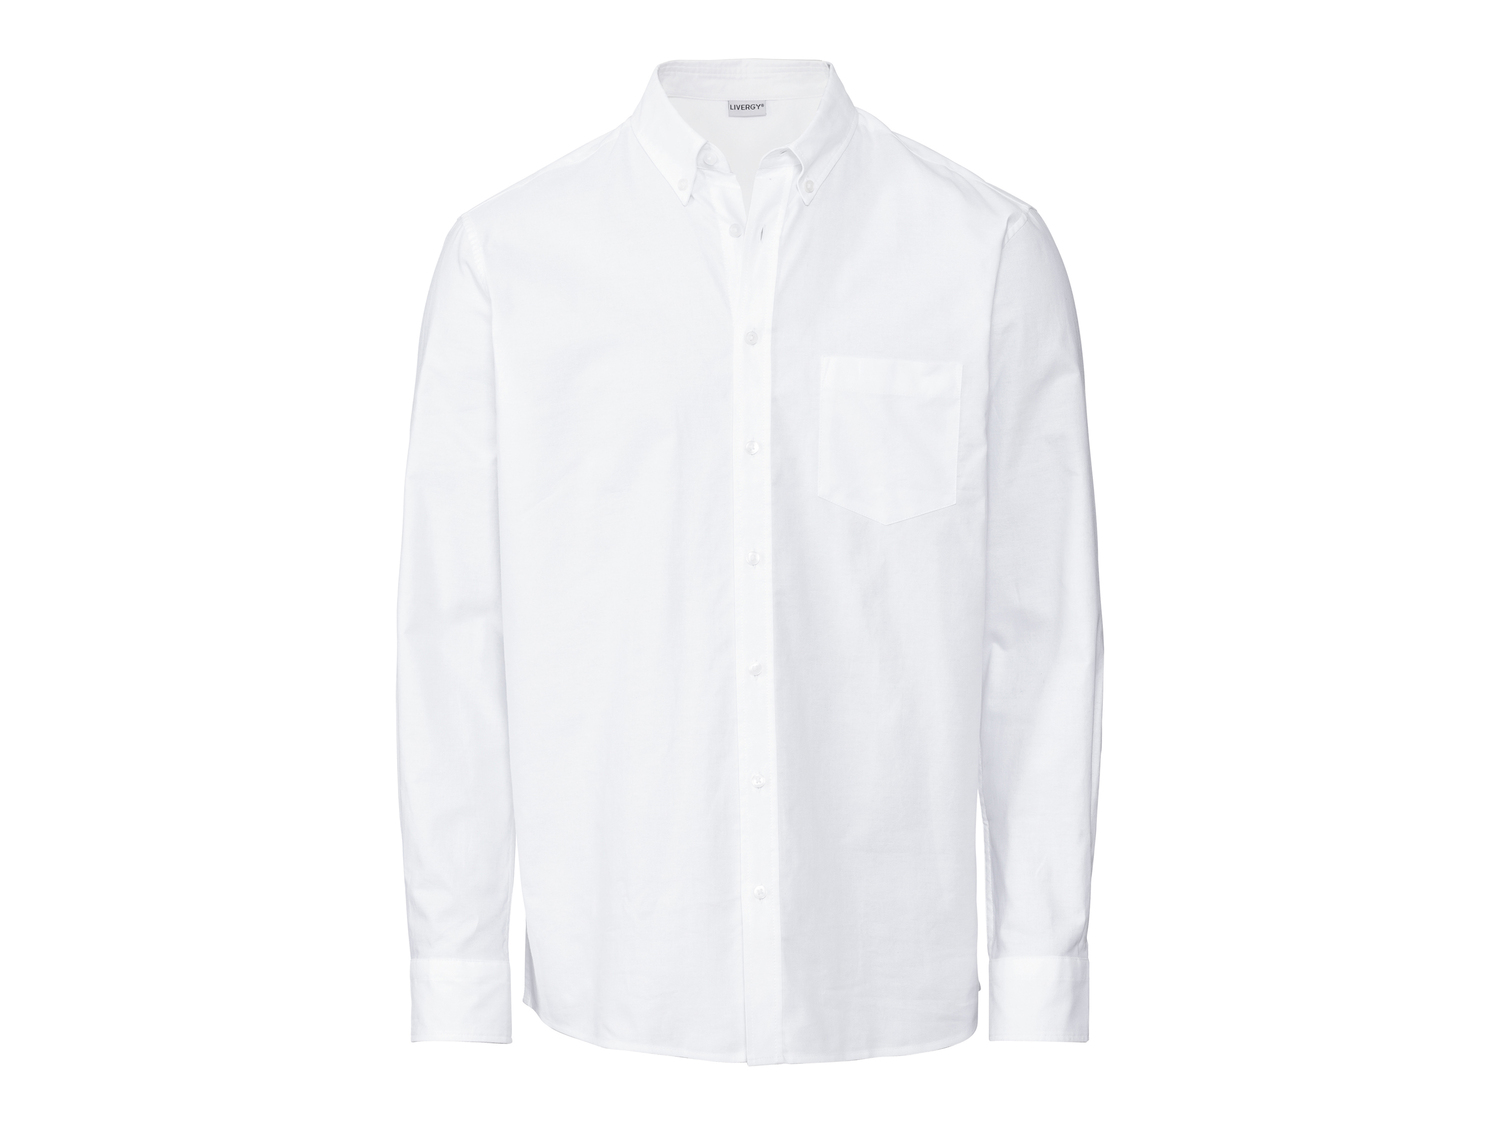 Camicia da uomo Livergy, prezzo 11.99 &#8364; 
Misure: S-XL 
- Puro cotone
Prodotto ...